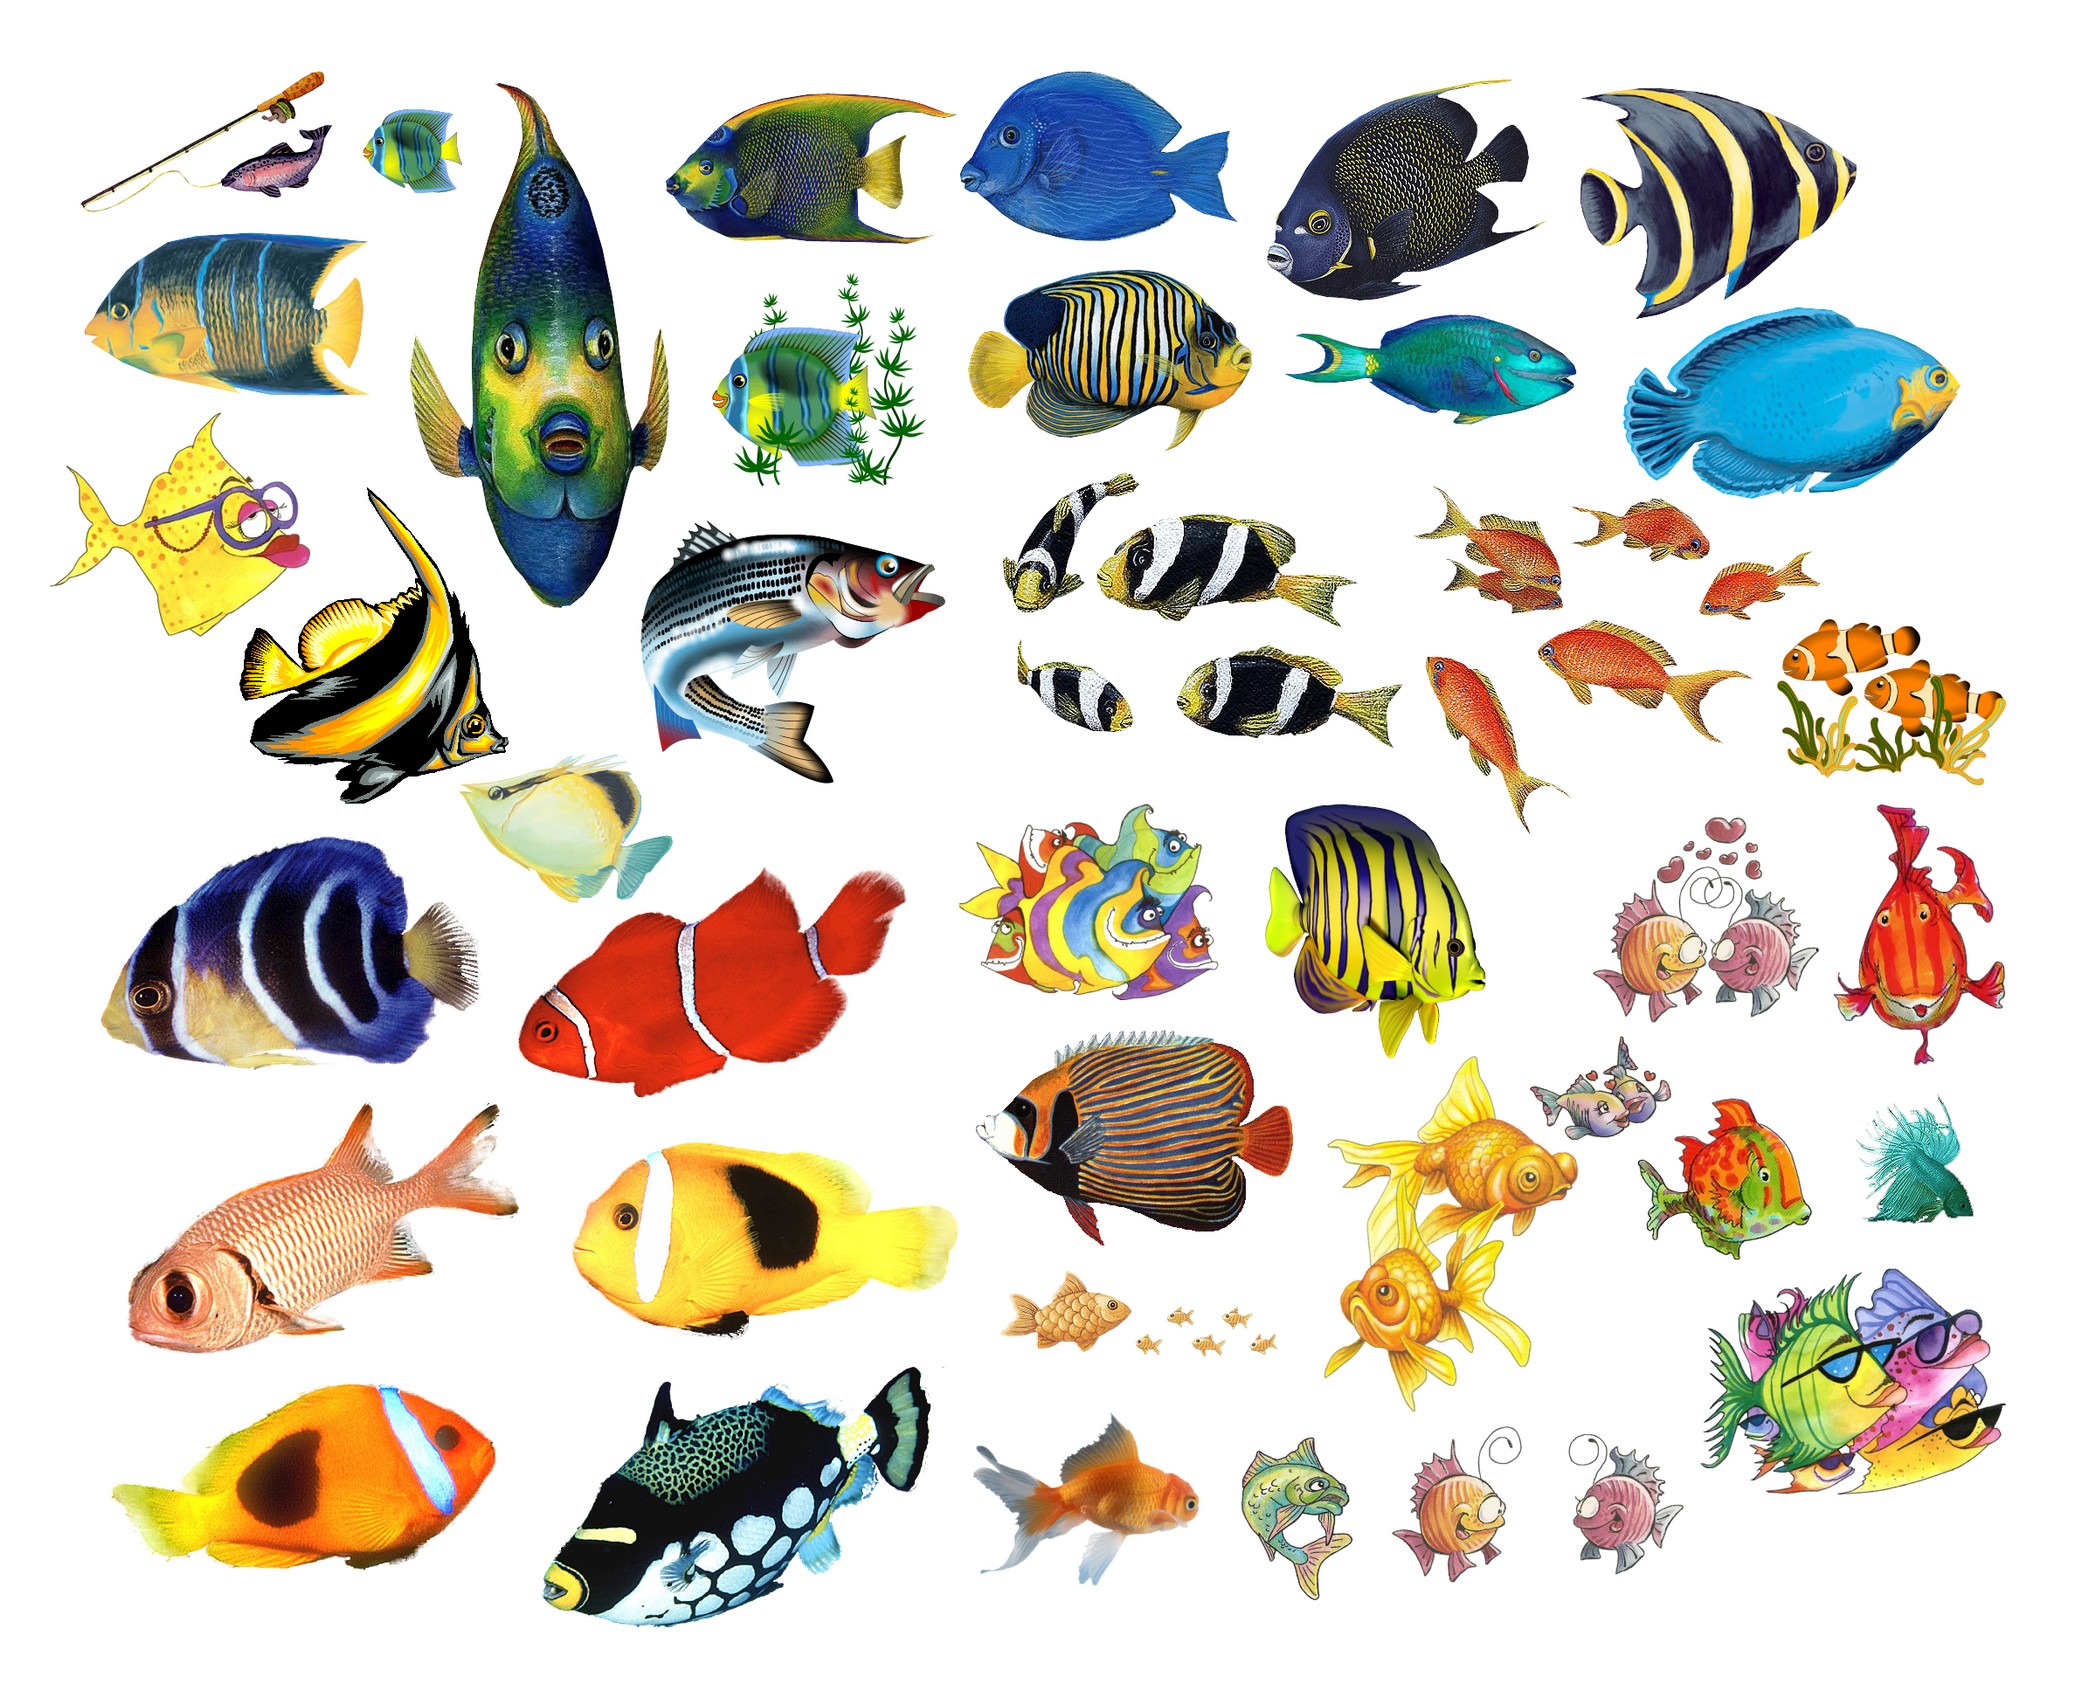 рыбки аквариумные картинки для детей